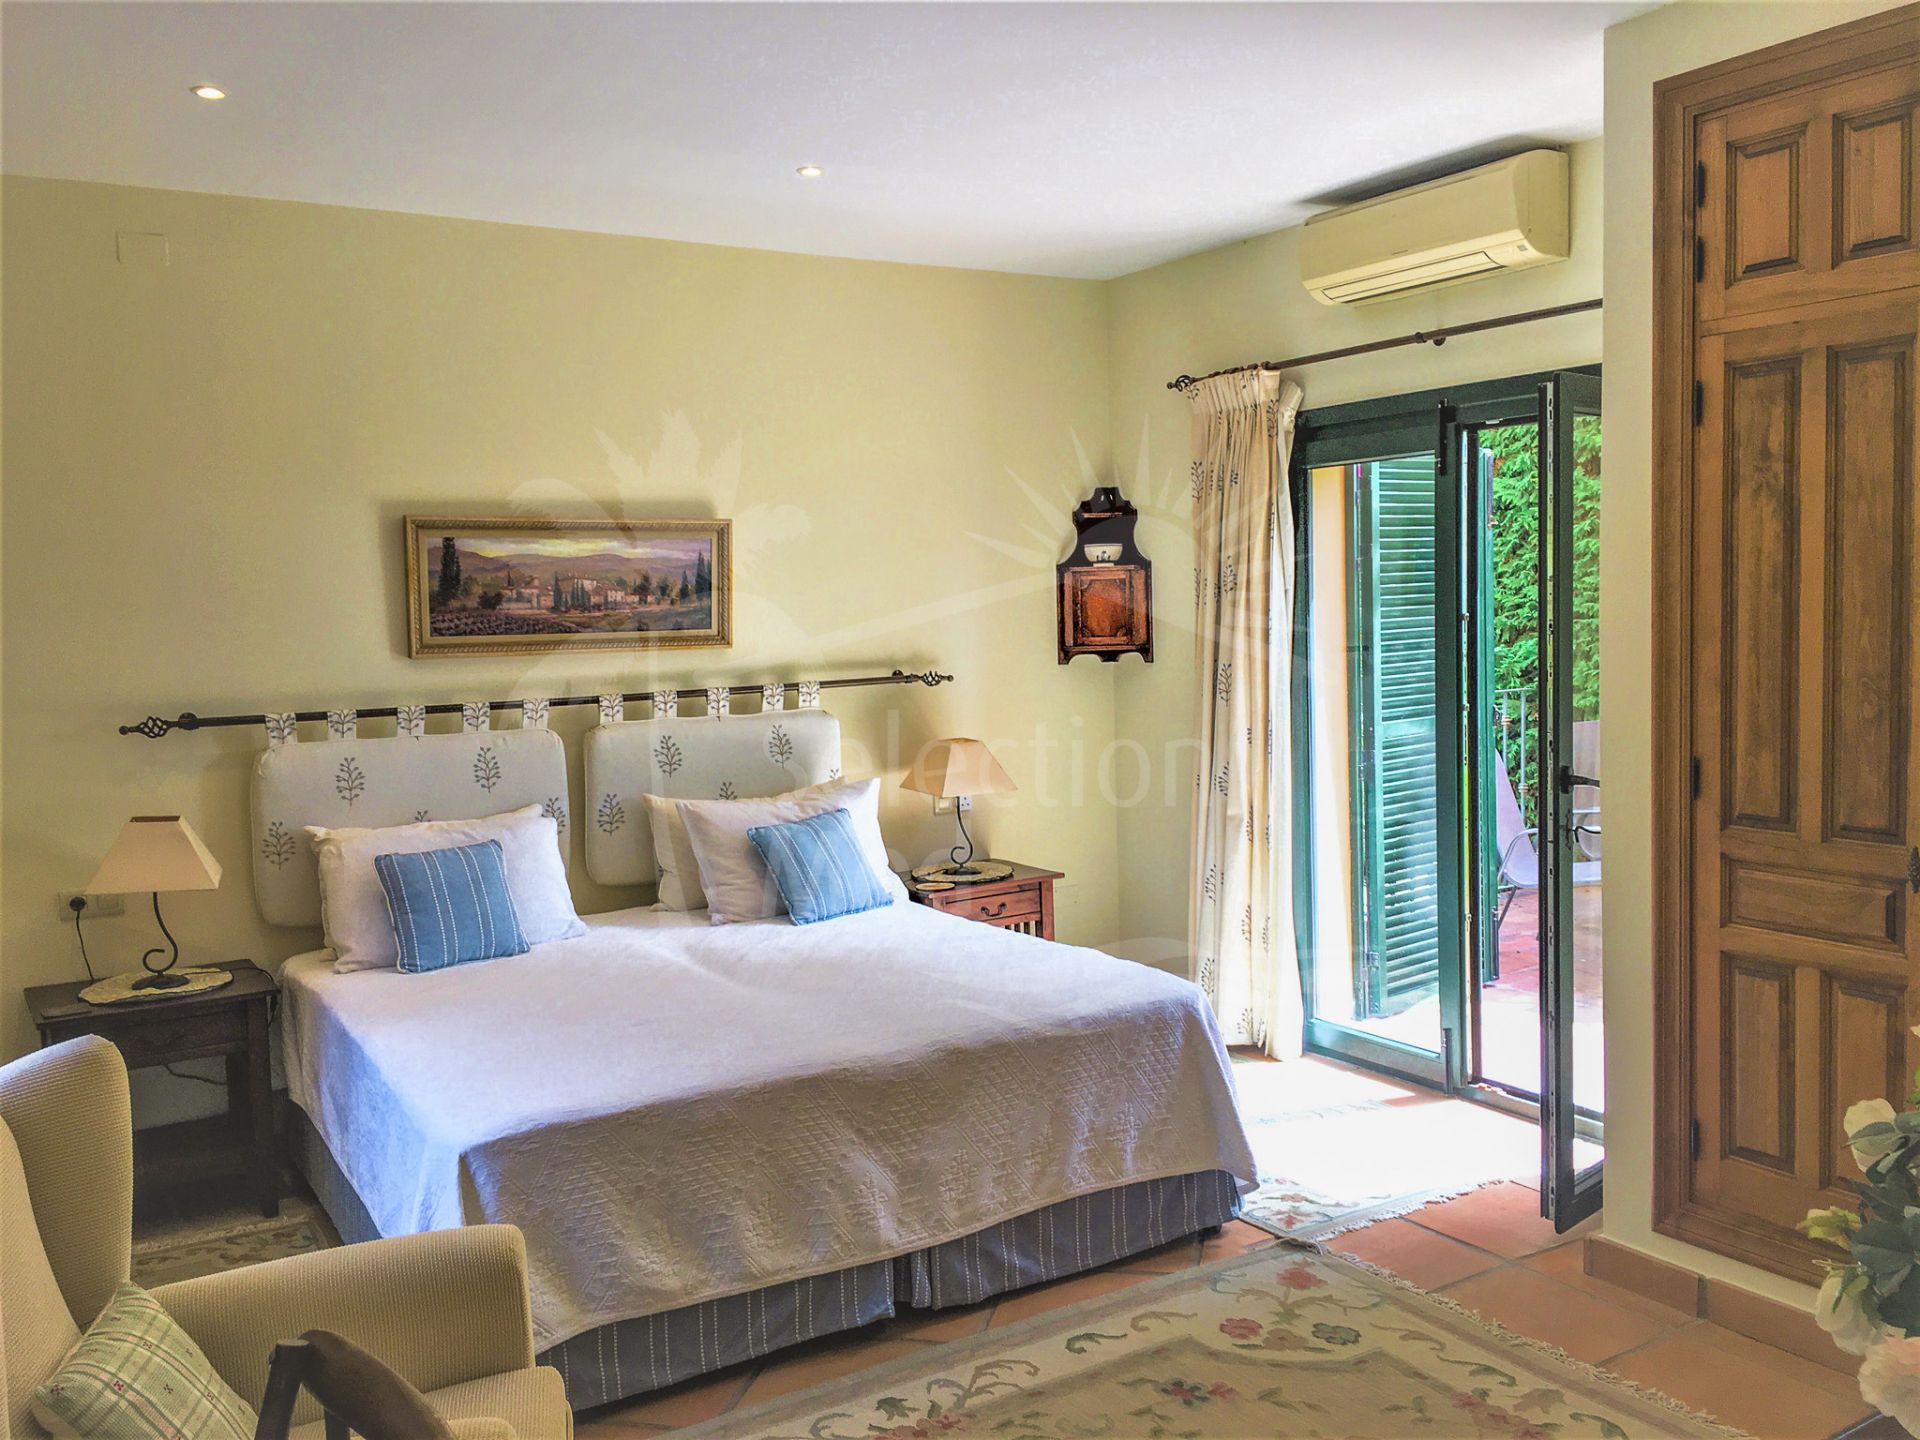 Impresionante Villa de Estilo Andaluz de 5 Dormitorios con Impresionantes Vistas.